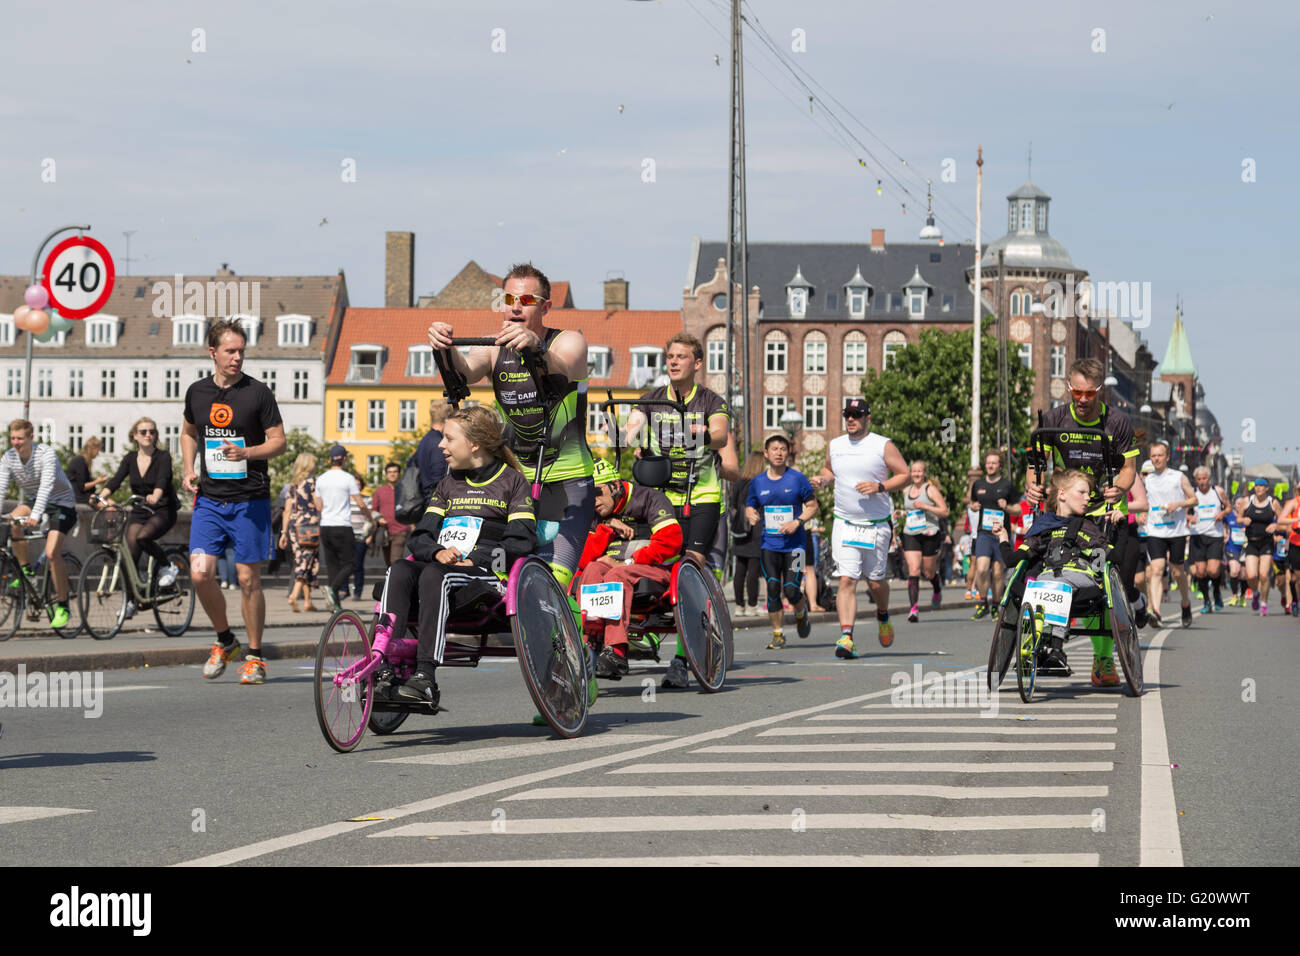 Copenhagen, Danimarca - 22 Maggio 2016: i corridori con sedie a rotelle presso l'evento annuale maratona di Copenaghen. Foto Stock